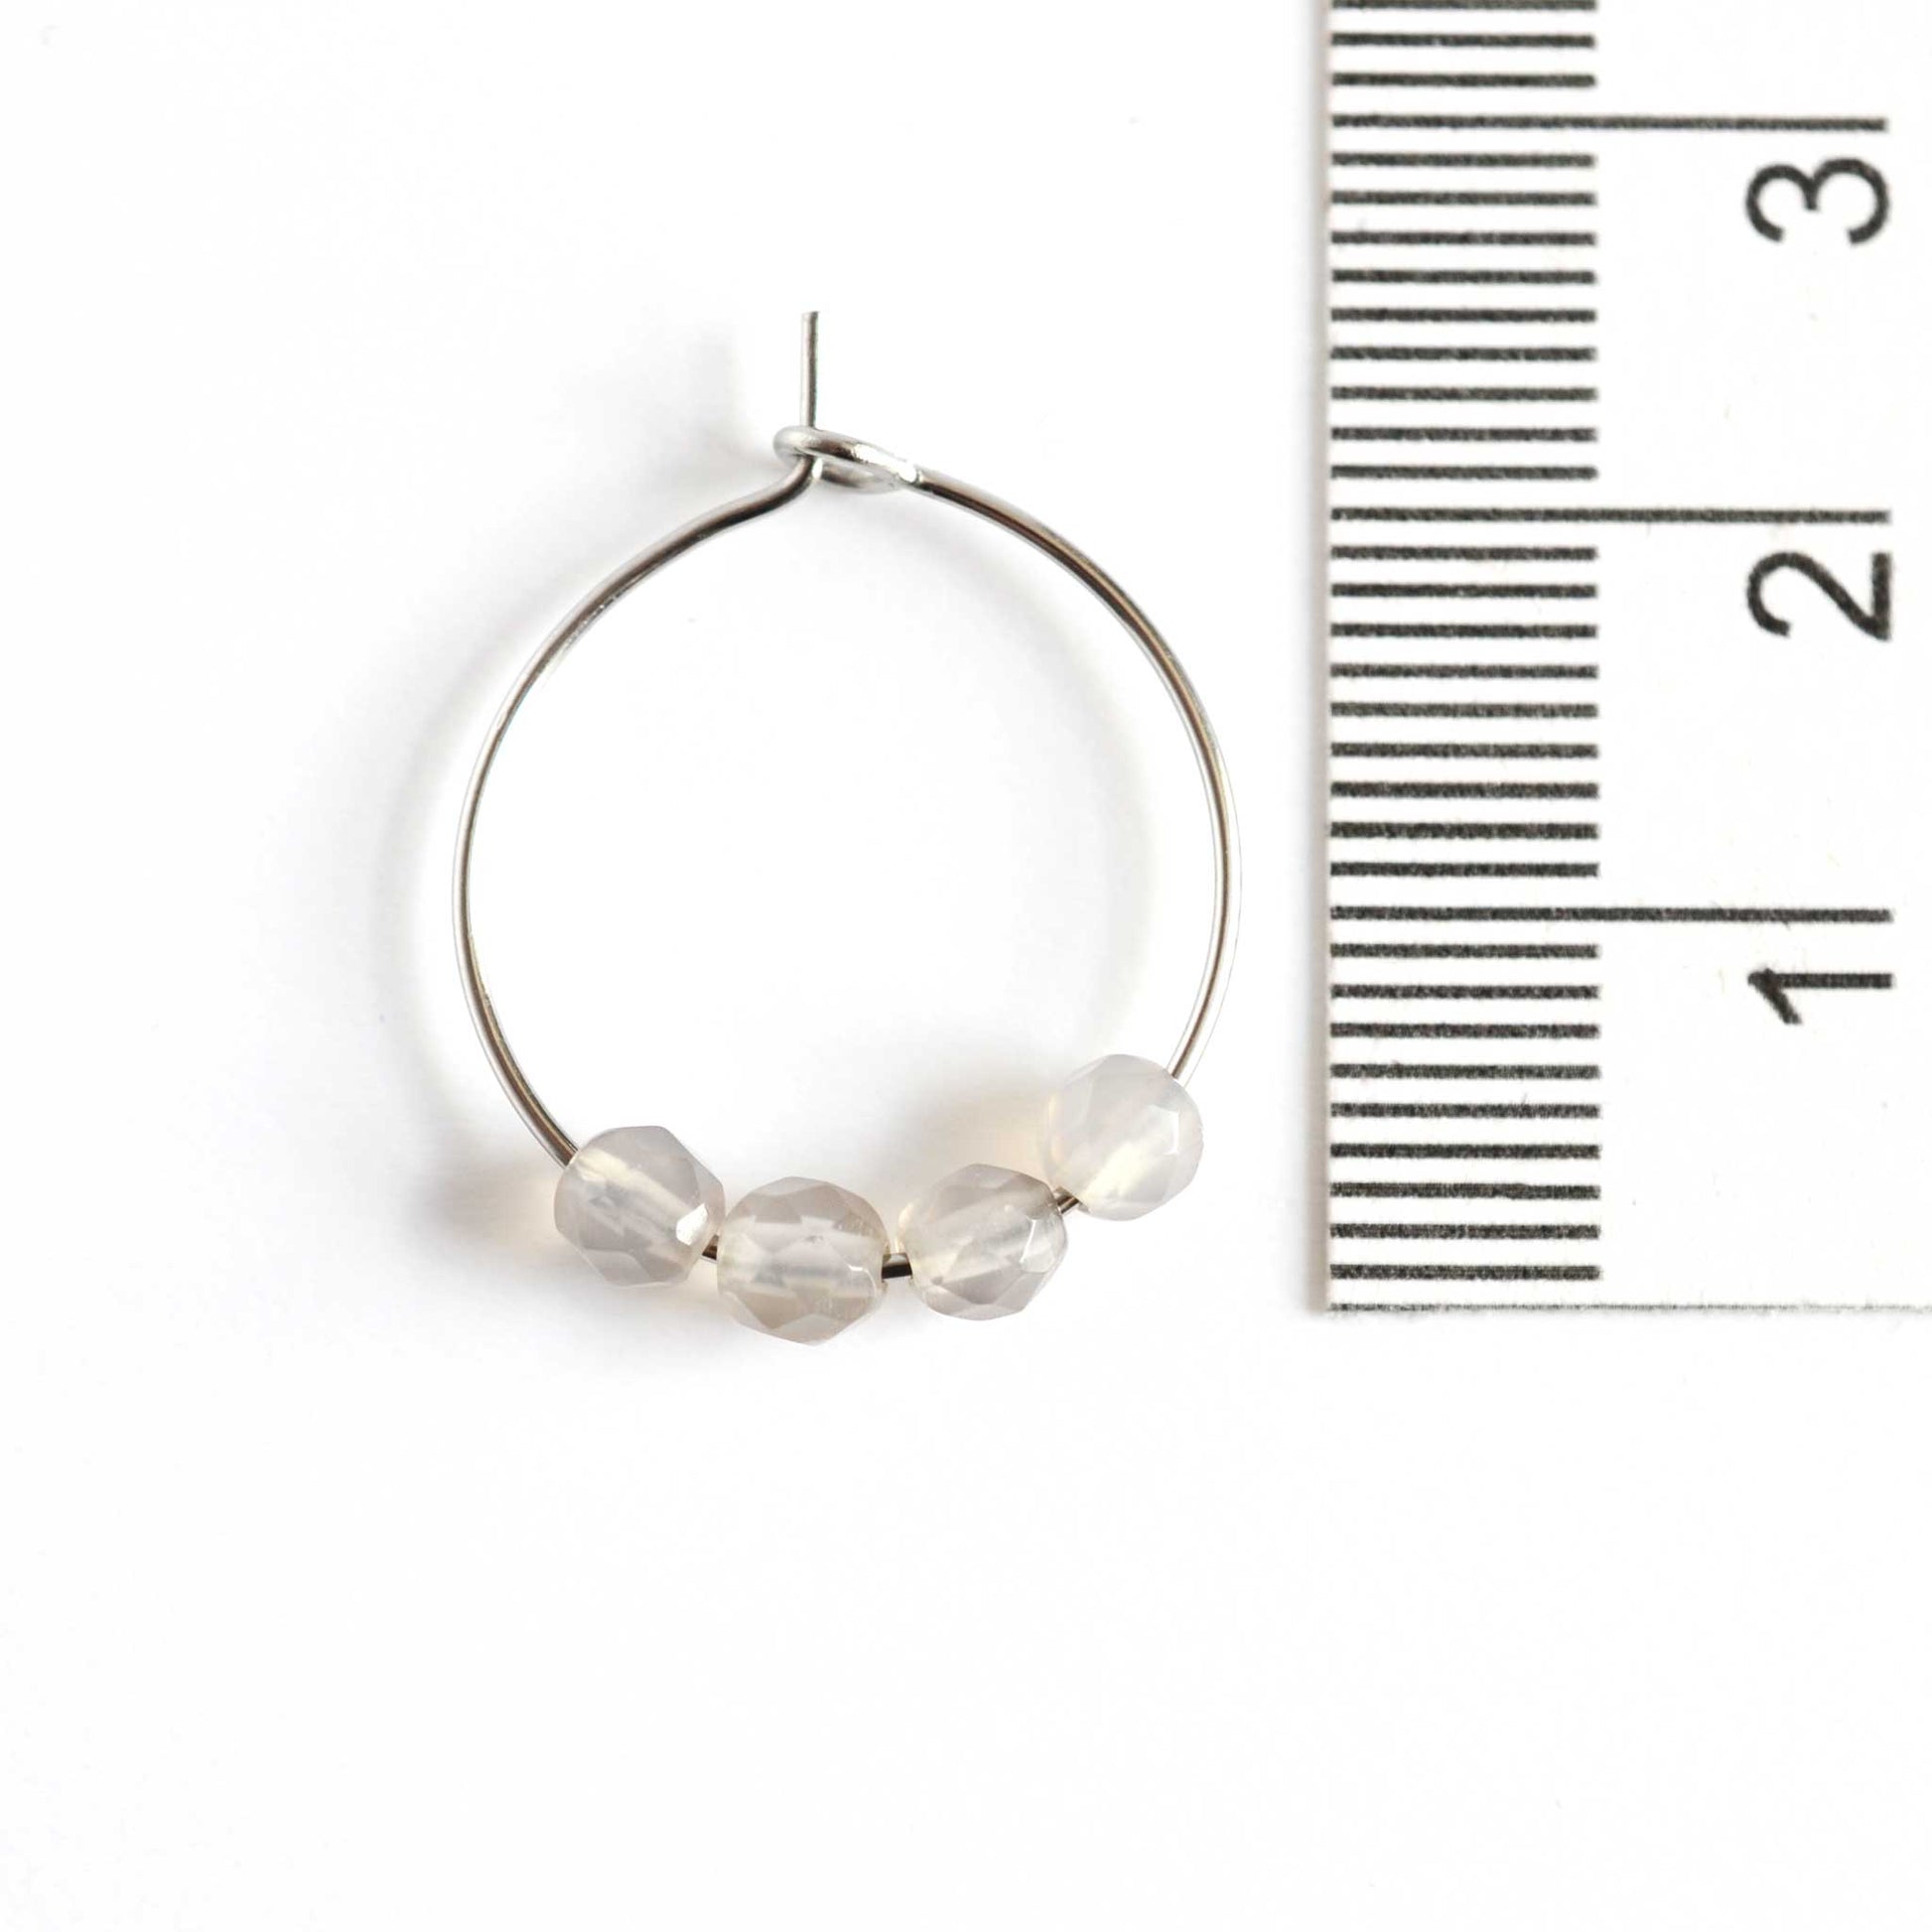 2cm diameter grey Agate gemstone hoop earrings next to ruler